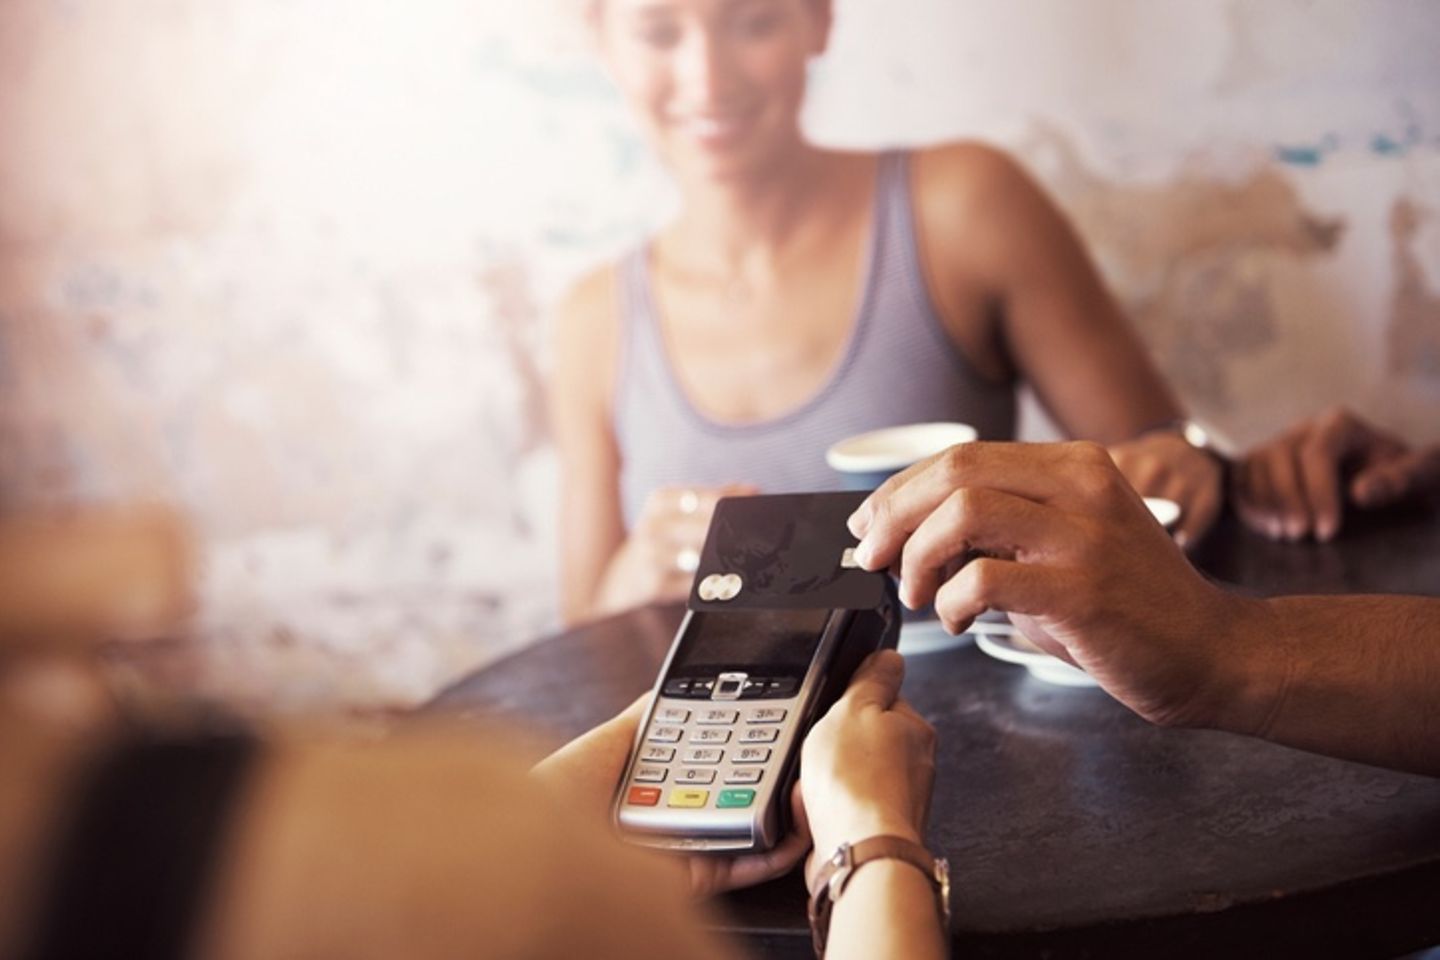 Kartenlesegerät im Vordergrund, auf das eine Kreditkarte gehalten wird, um kontaktlos zu zahlen.